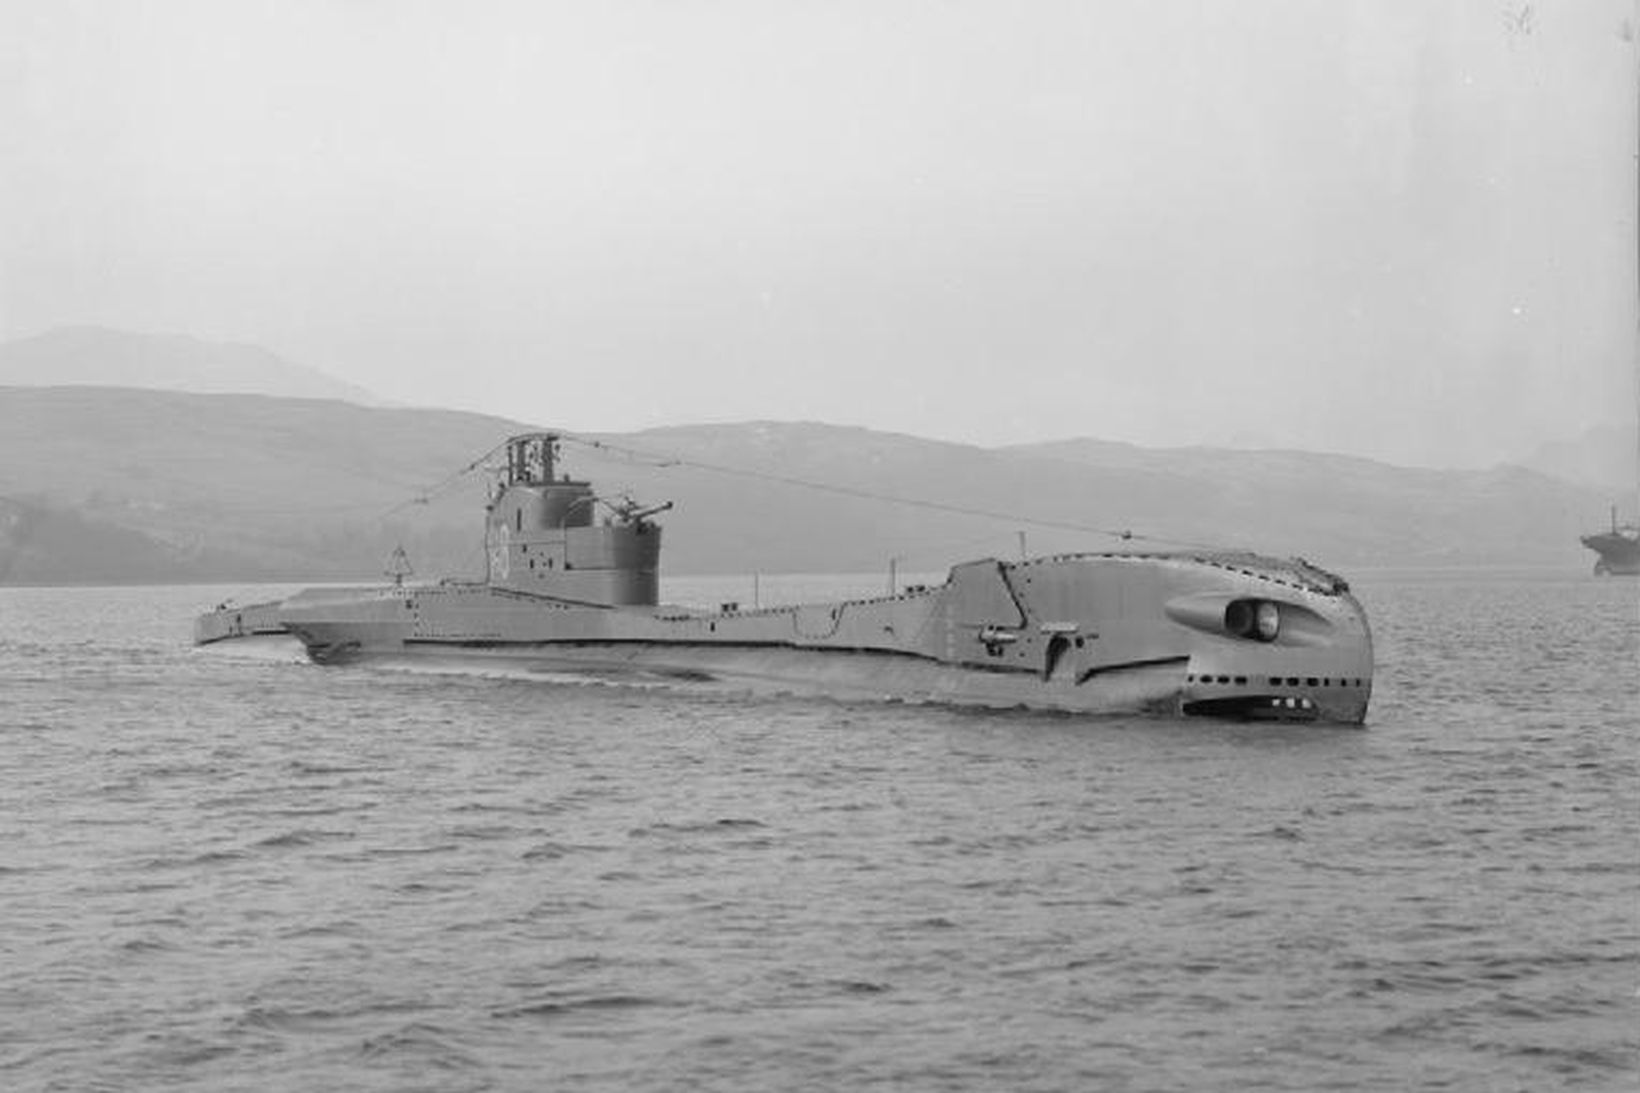 Kafbátur sömu gerðar og HMS P 311.